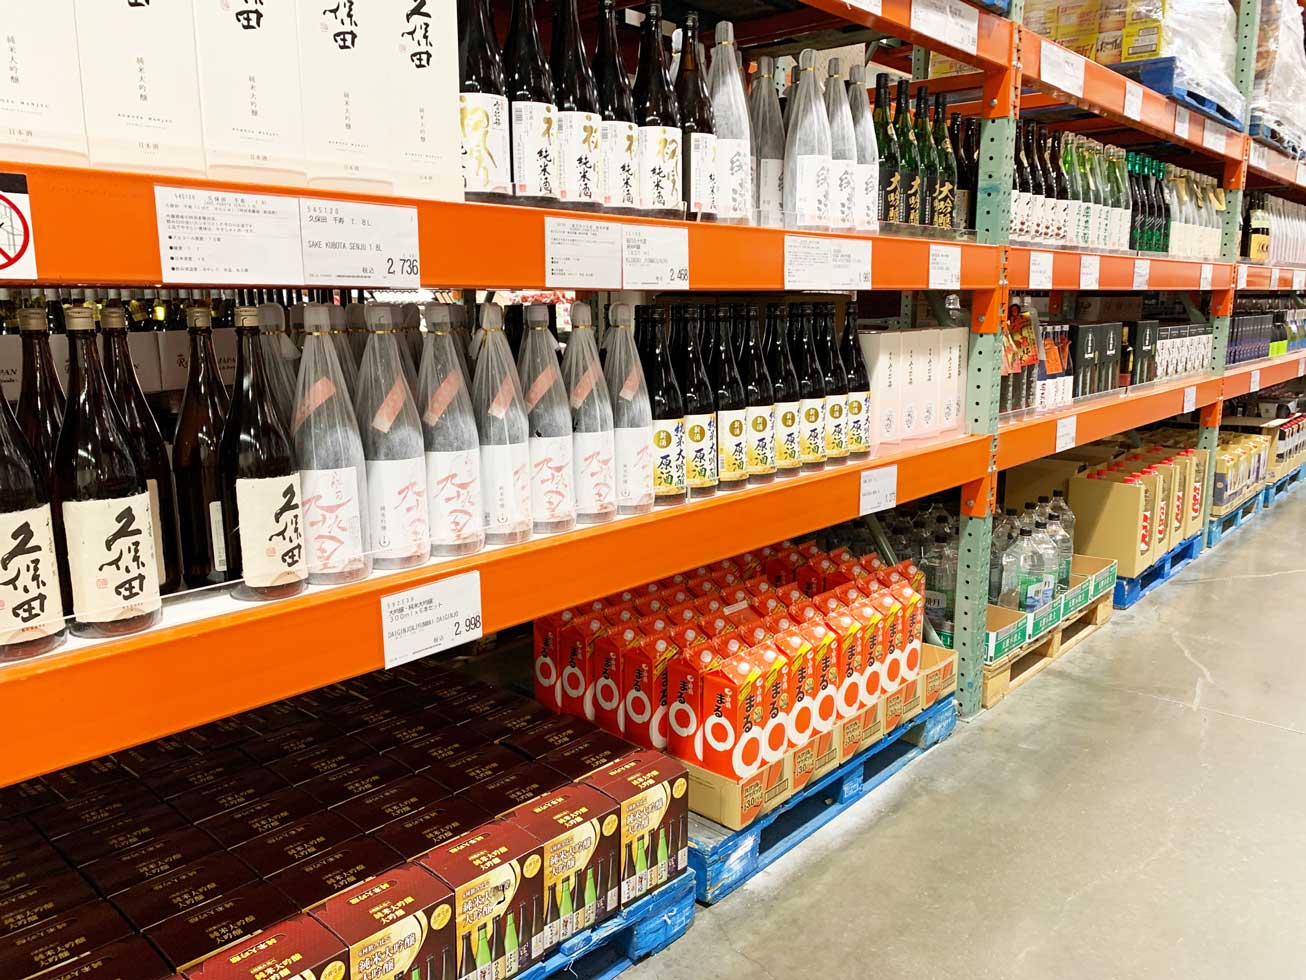 コストコで購入出来る日本酒の種類 価格一覧をご紹介 想定以上に種類が豊富